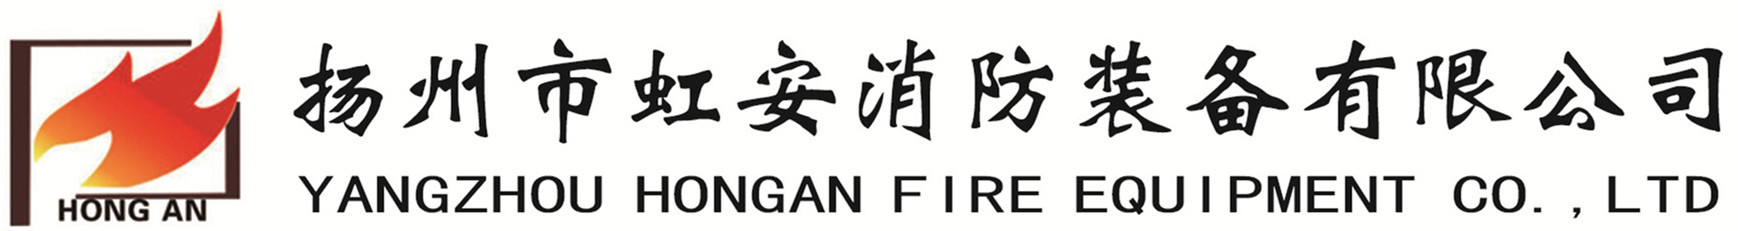 YANGZHOU HONGAN FIRE EQUIPMENT CO.，LTD